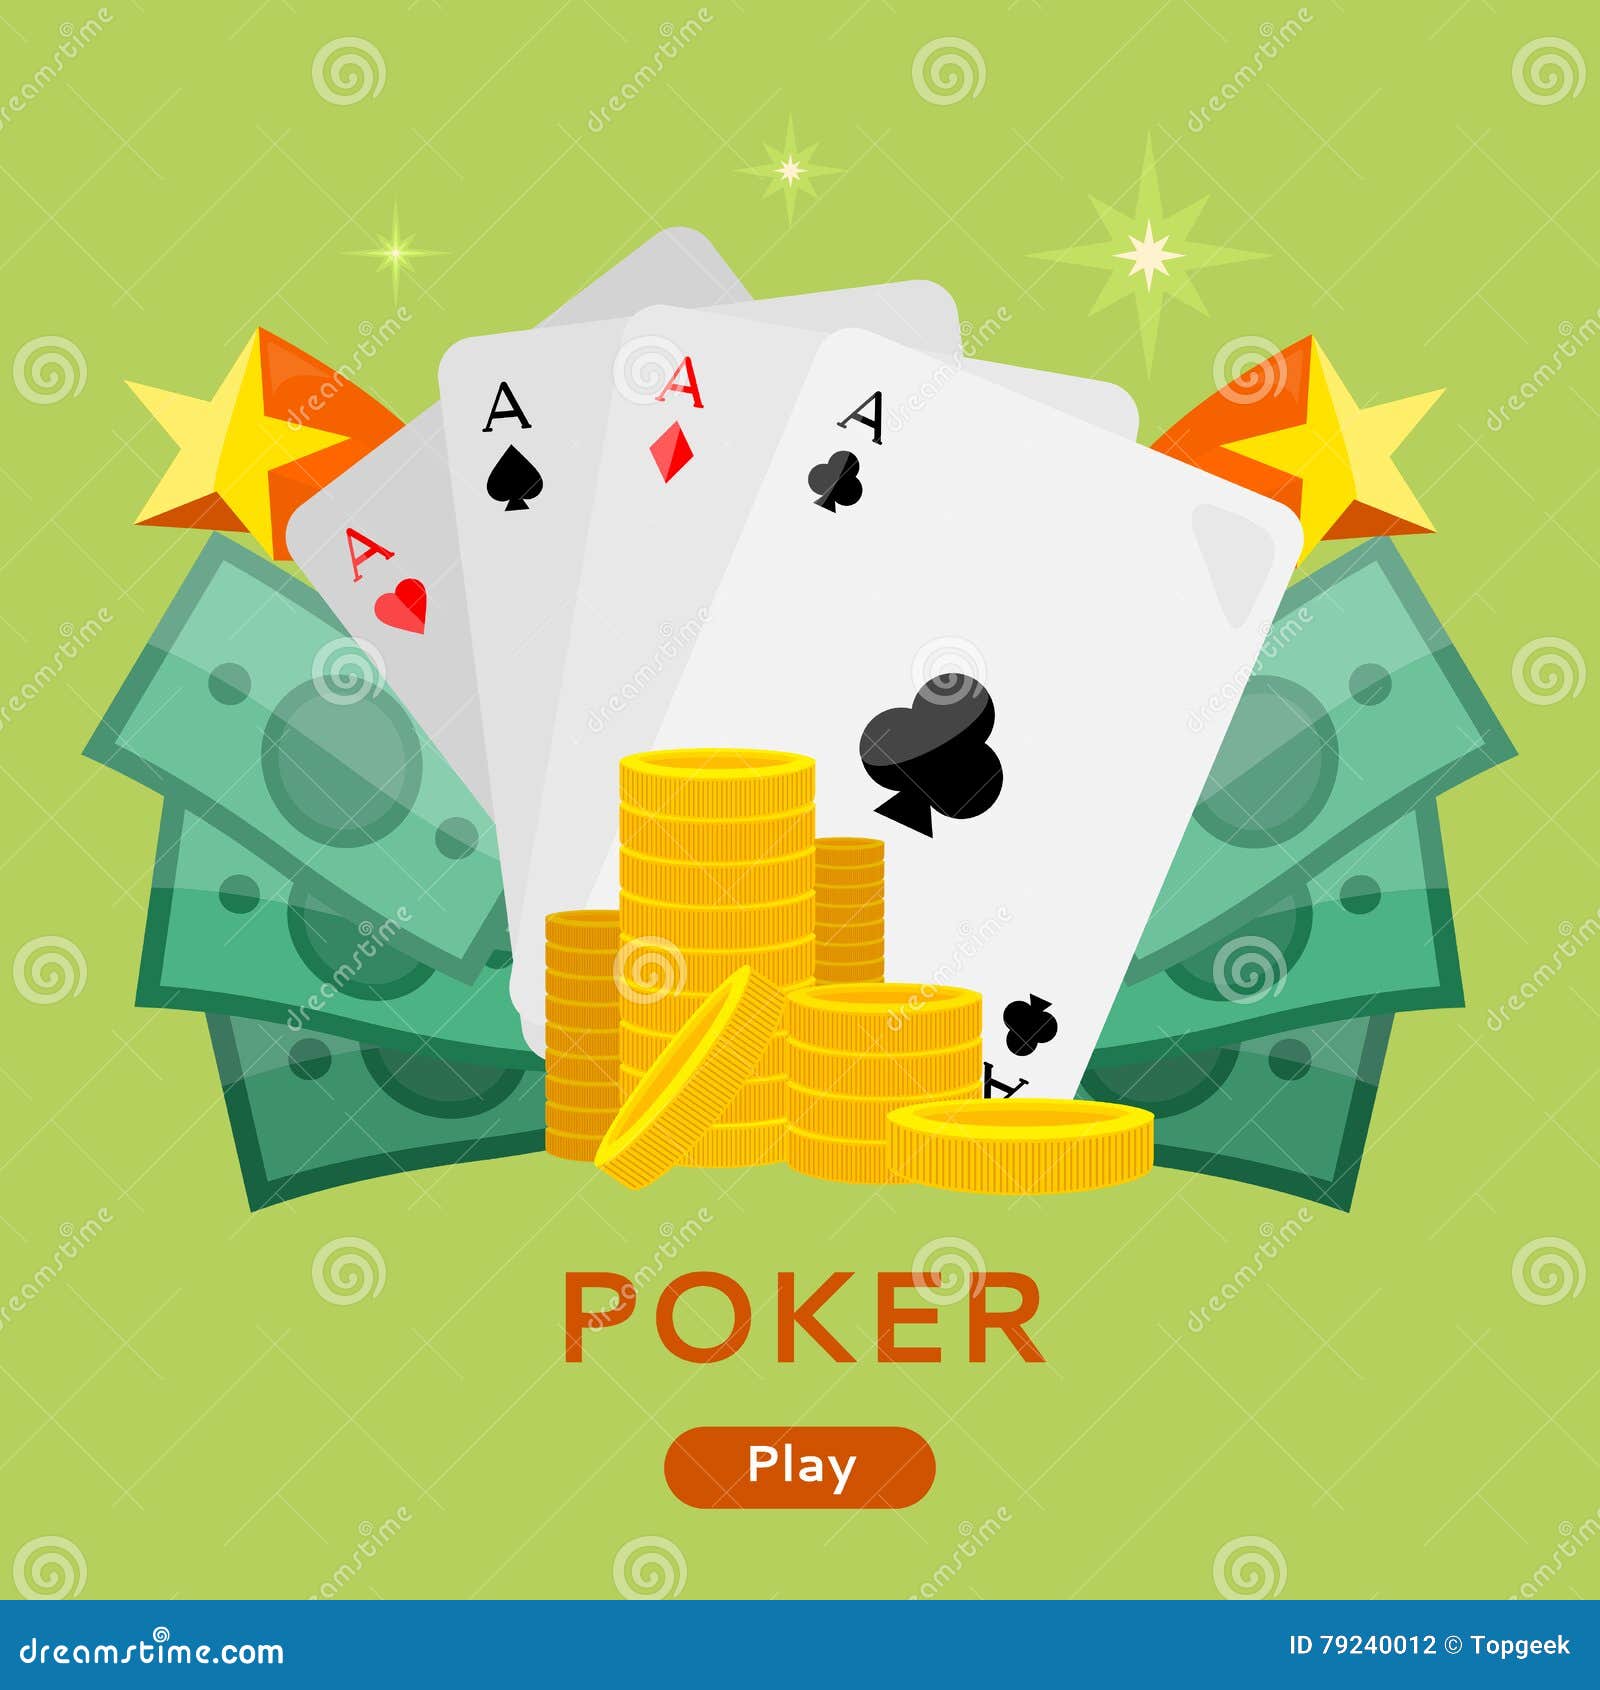 poker by gazeus